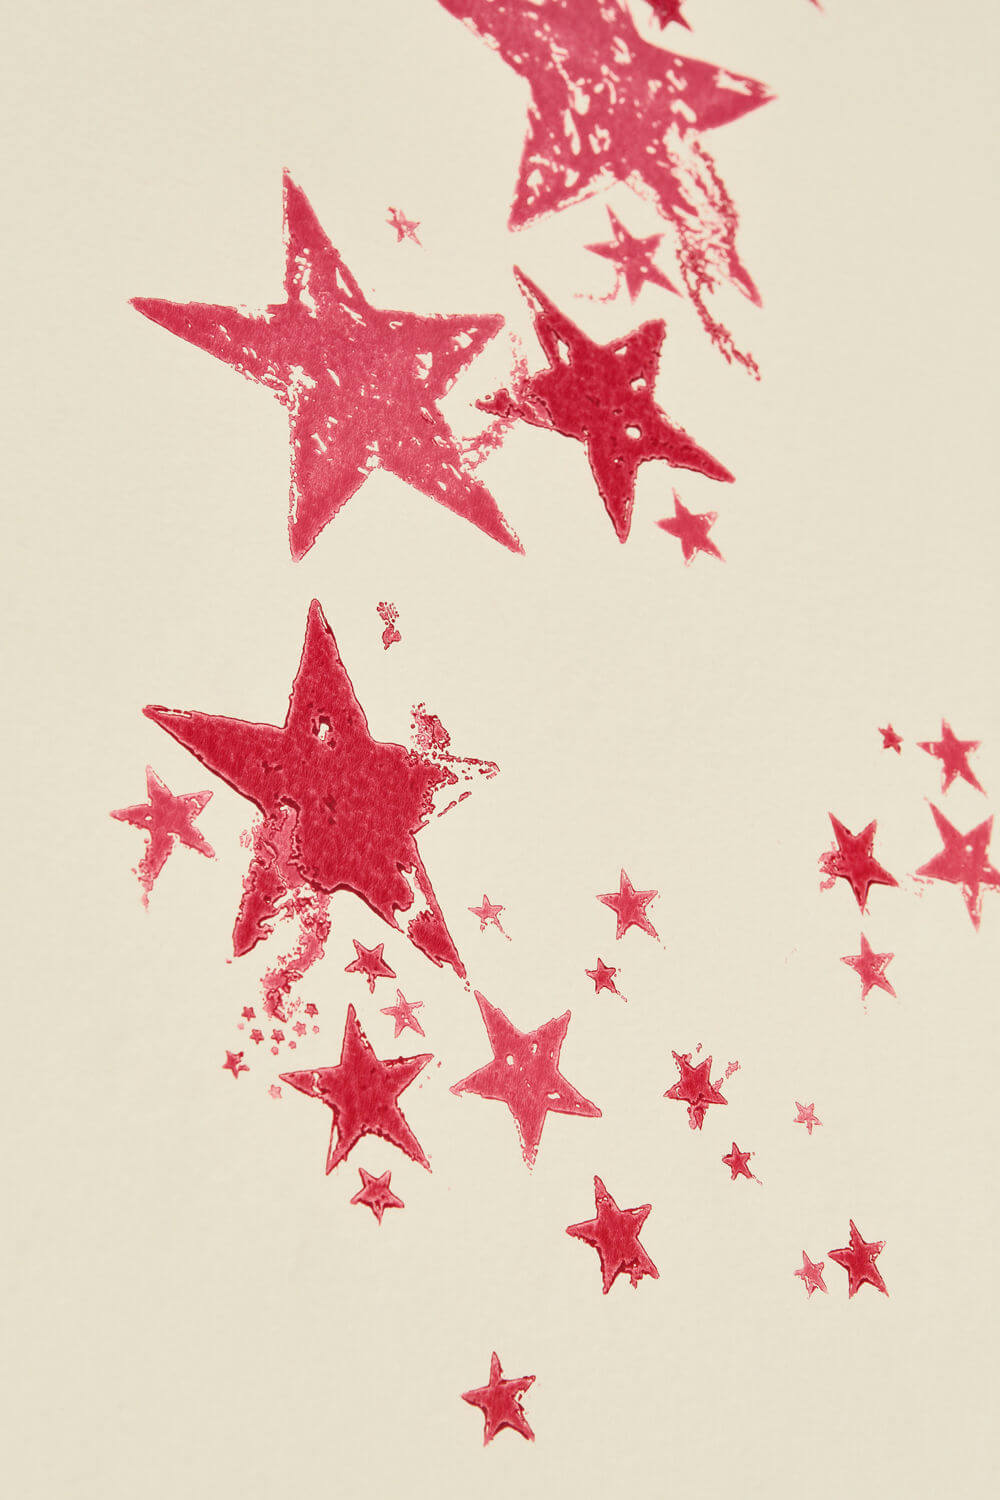 All Star Nursery Room Wallpaper 3 - Red